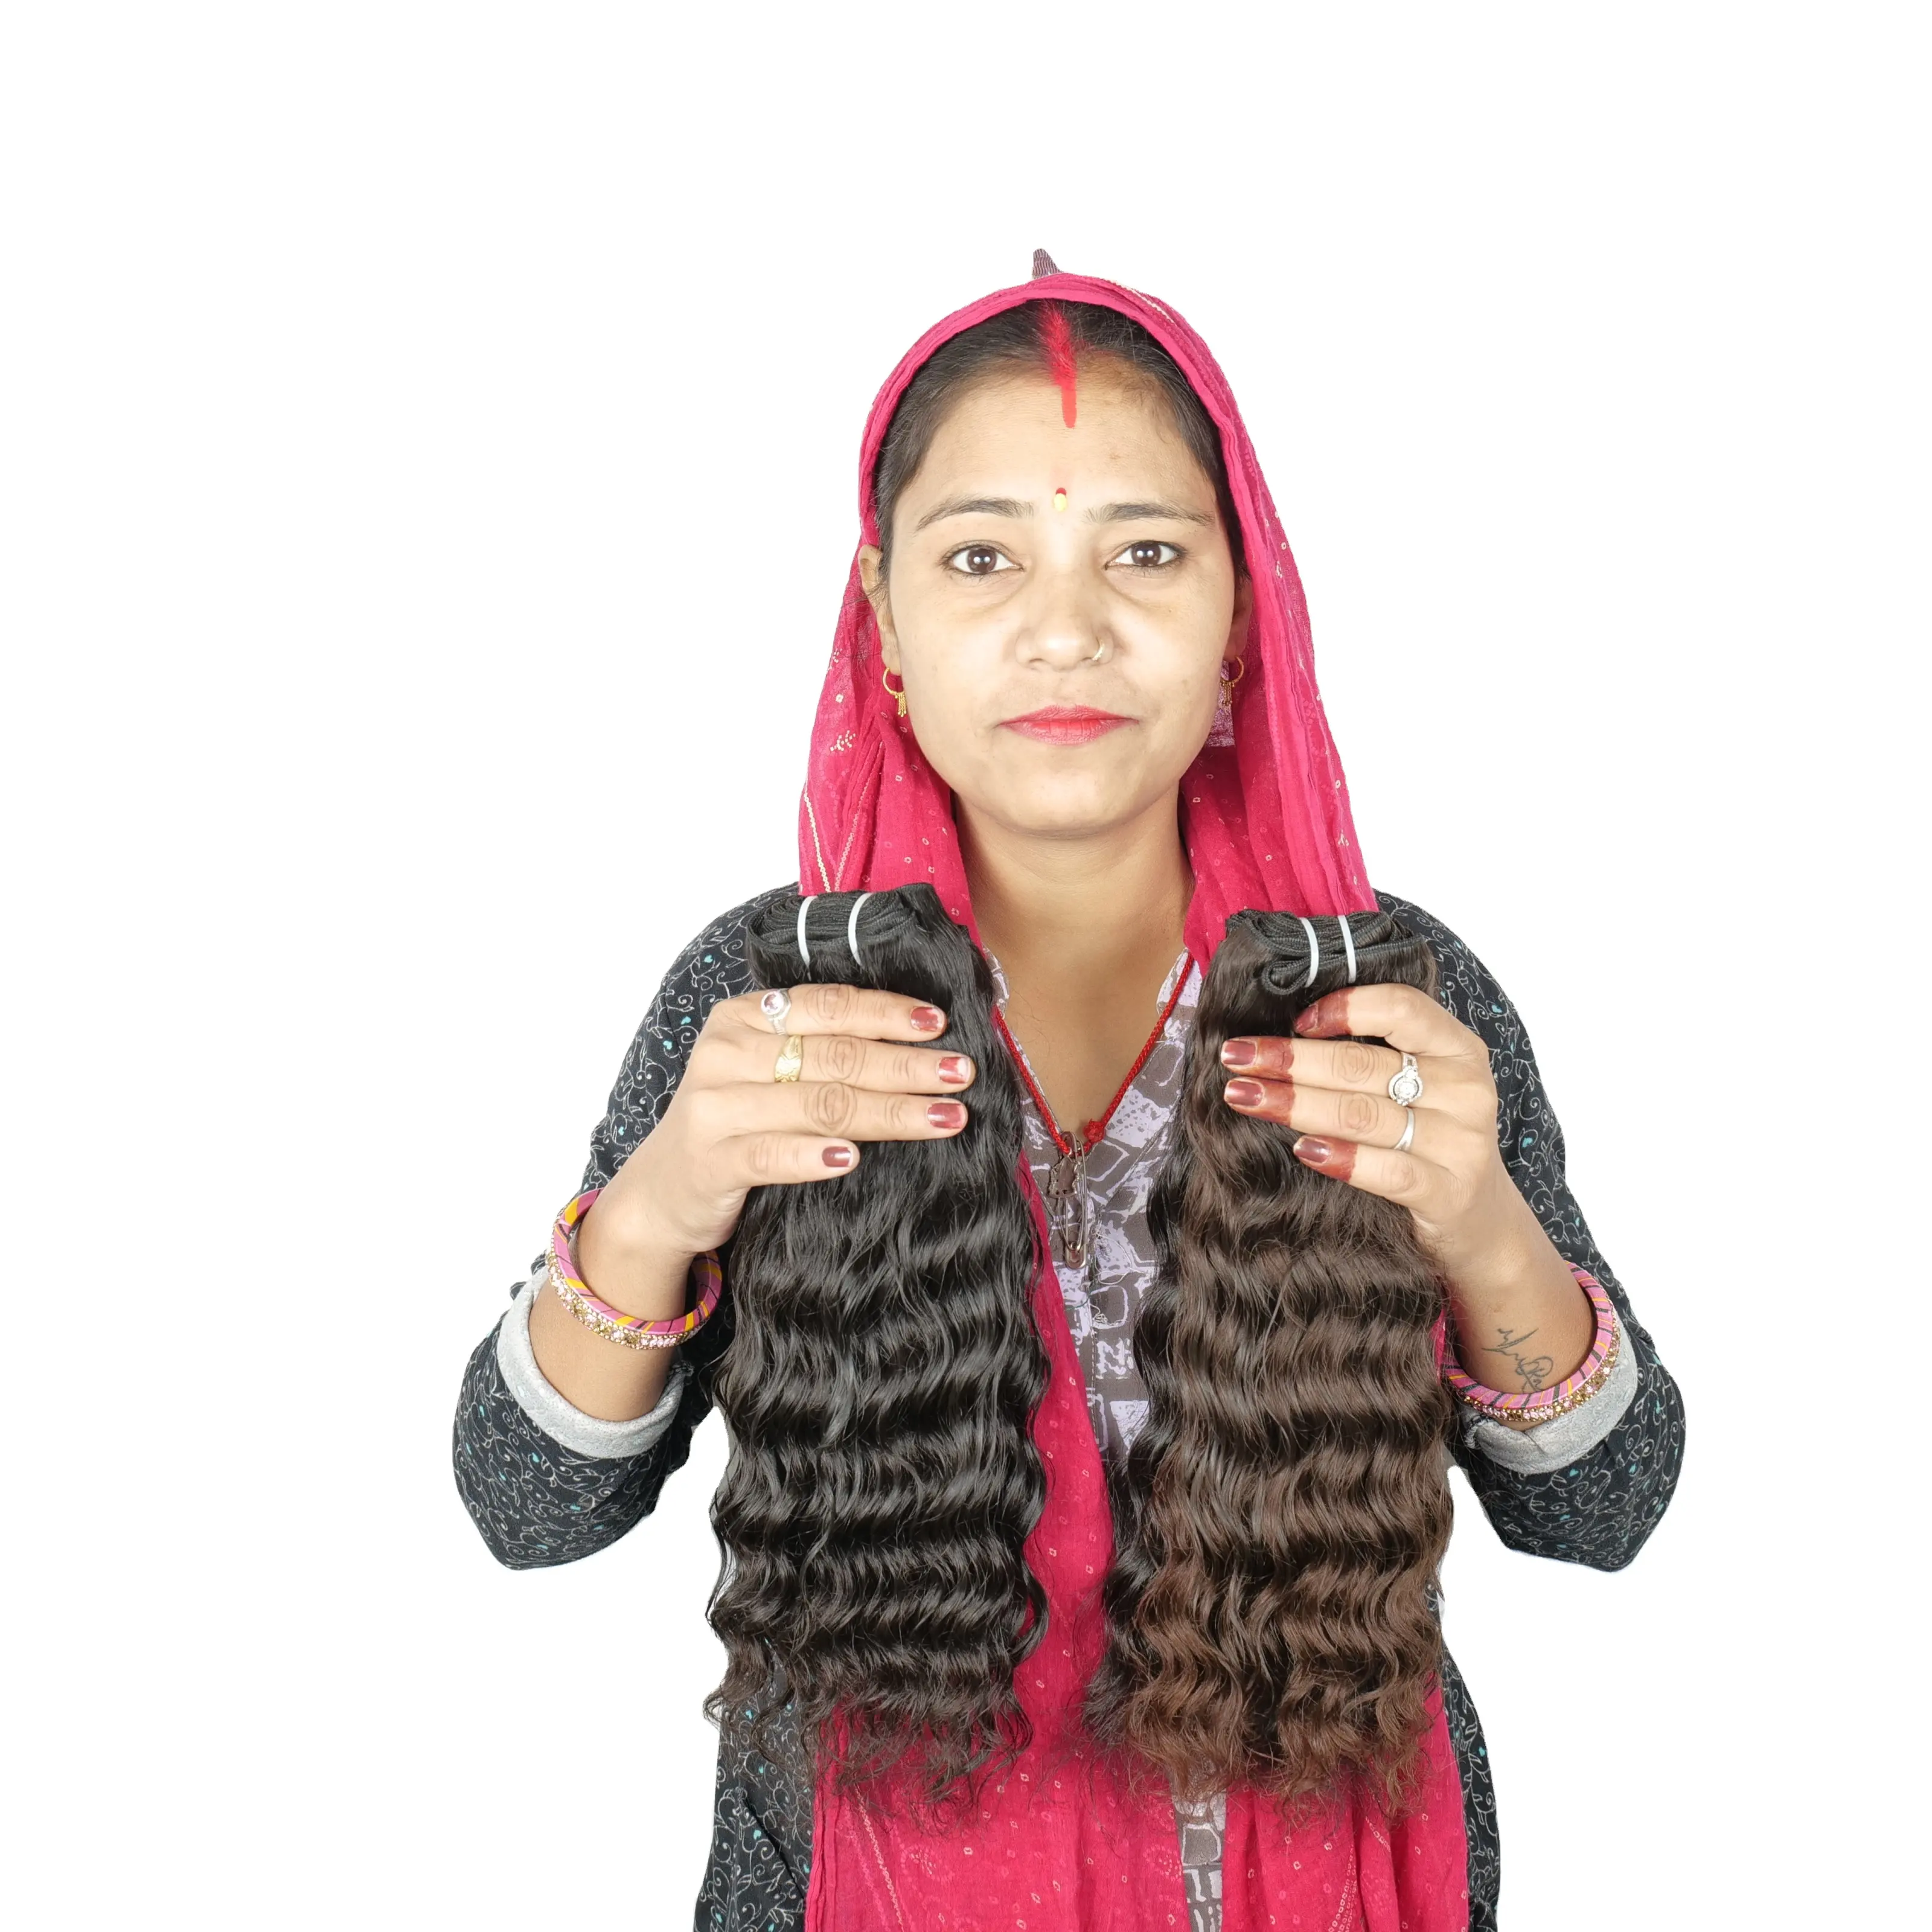 100% 원시 처녀 최고 품질 저렴한 큐티클 정렬 블랙 컬러 물결 모양의 자연 번들 인도 사원 인간의 머리카락 확장